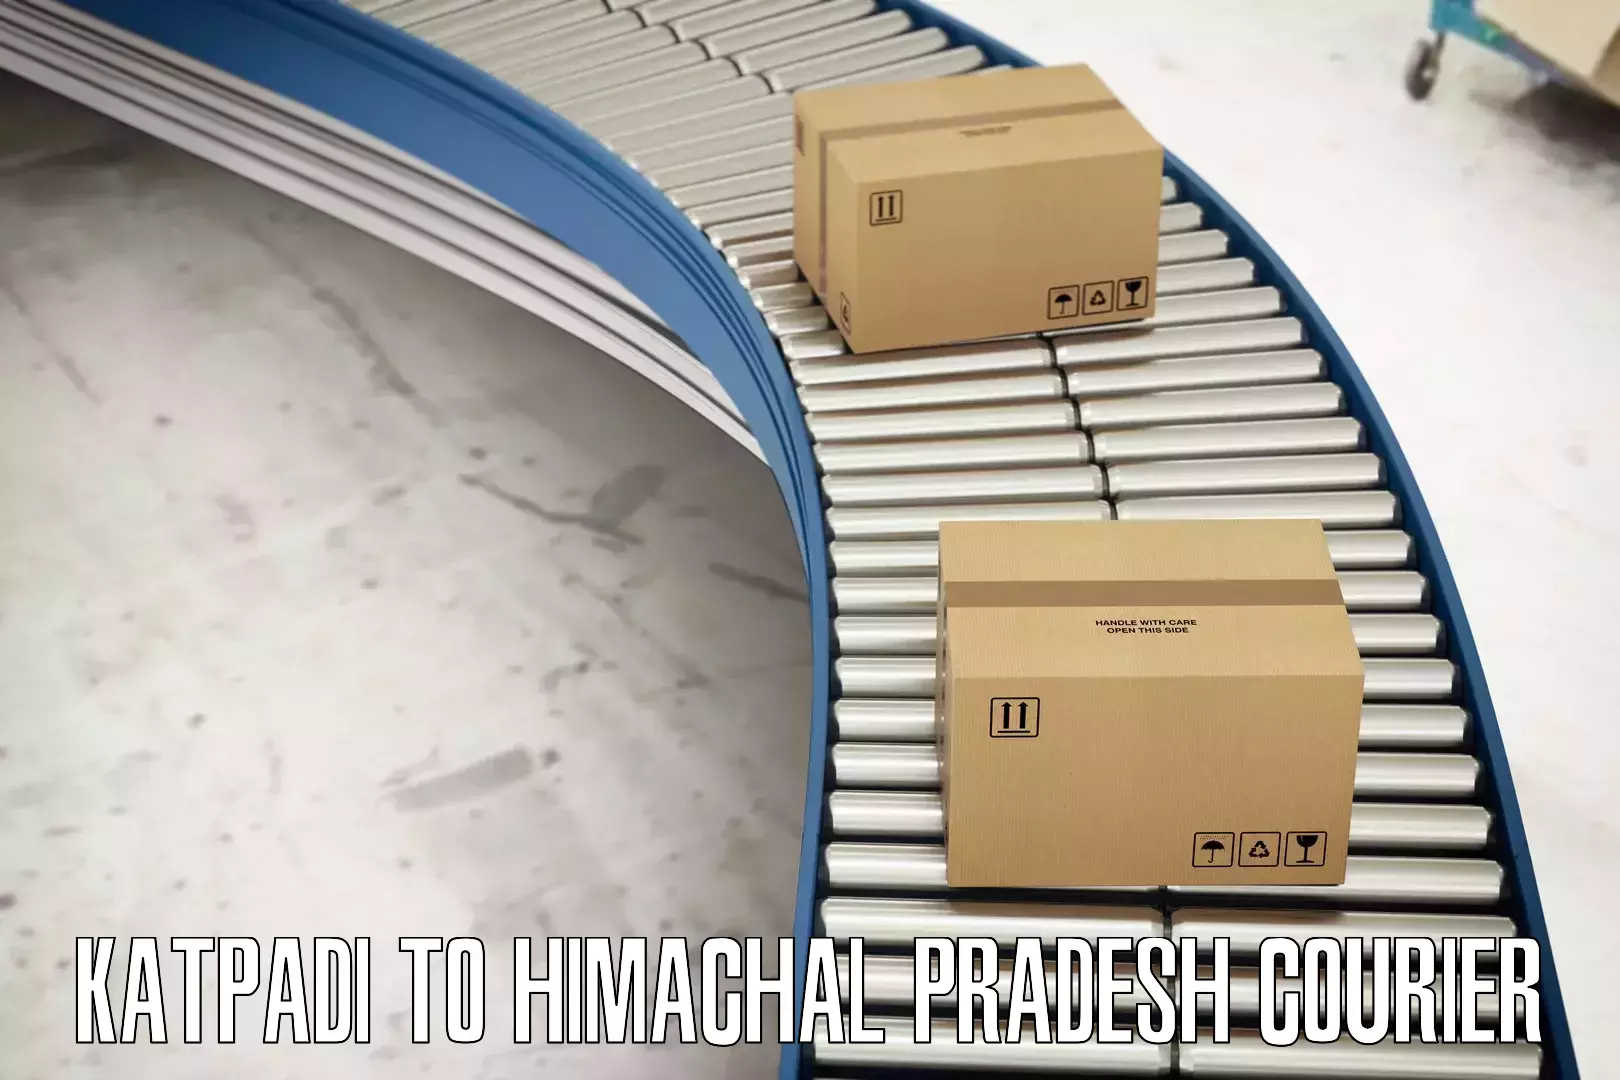 Large package courier Katpadi to Himachal Pradesh